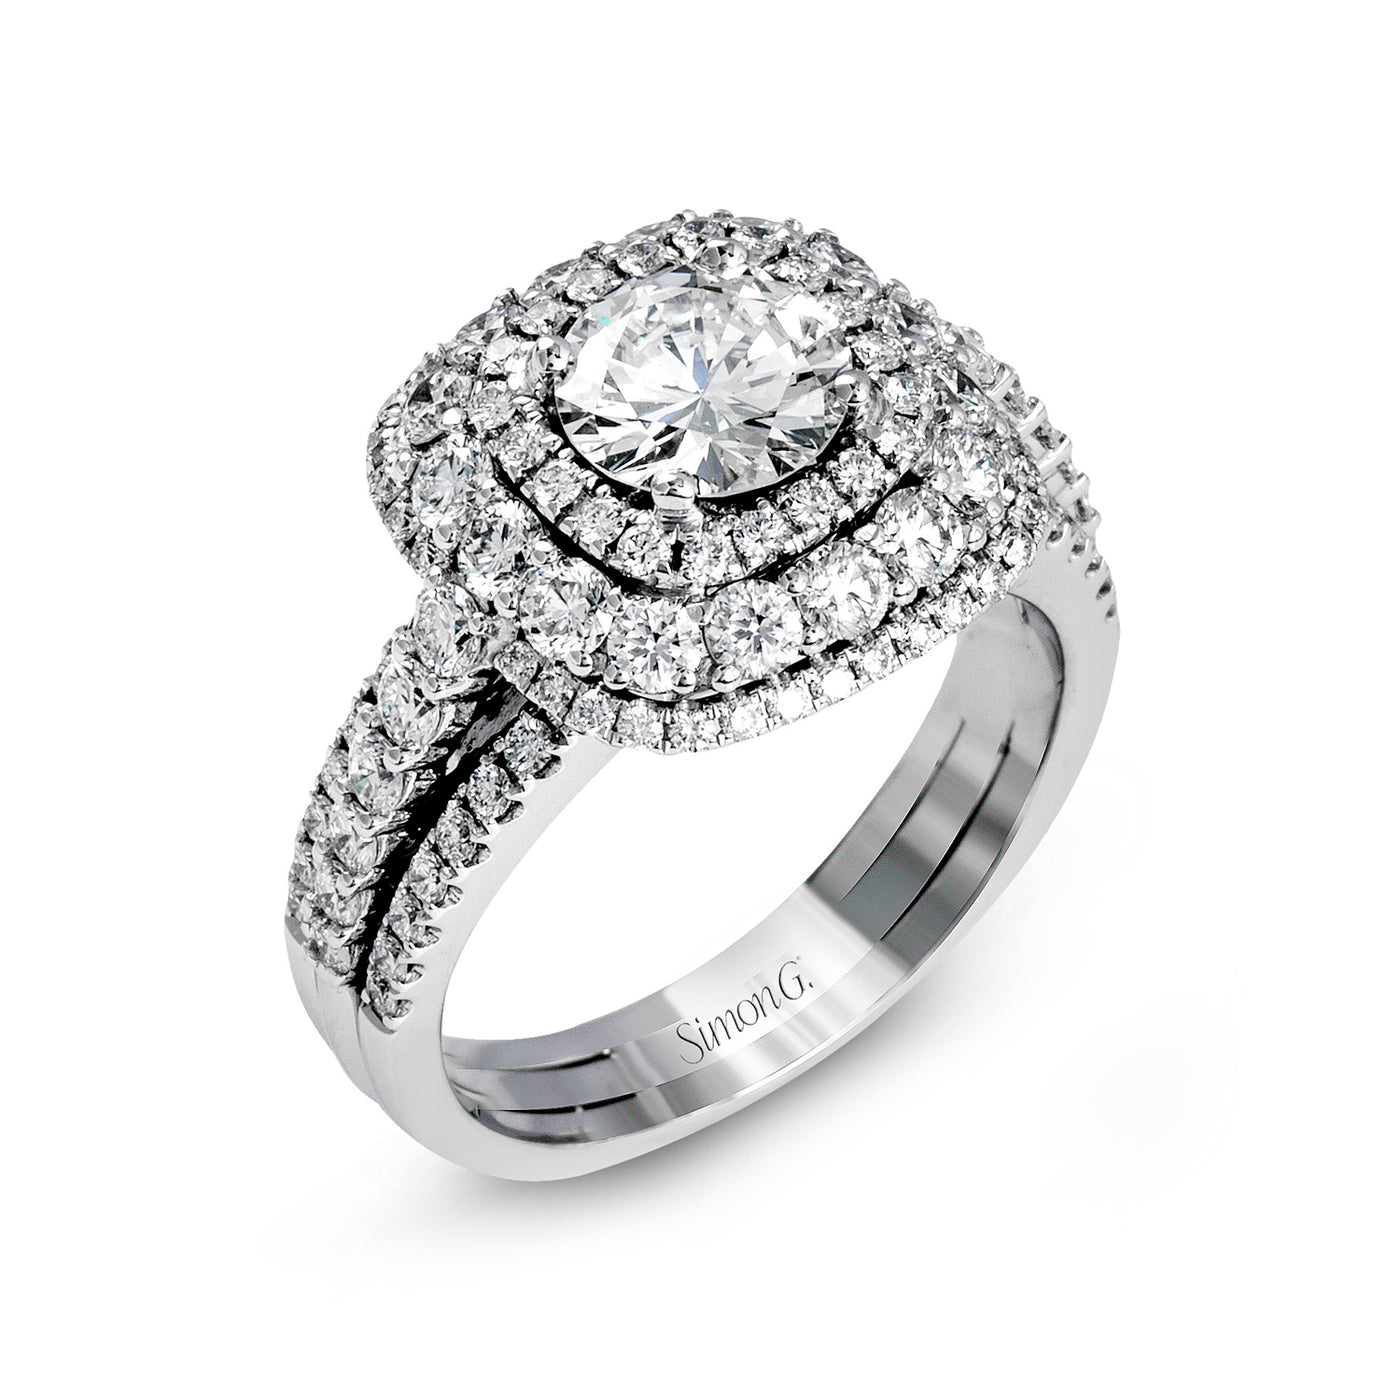 Simon G 18k White Gold Round Double Halo Diamond Semi-Mount Engagement Ring – MR2622